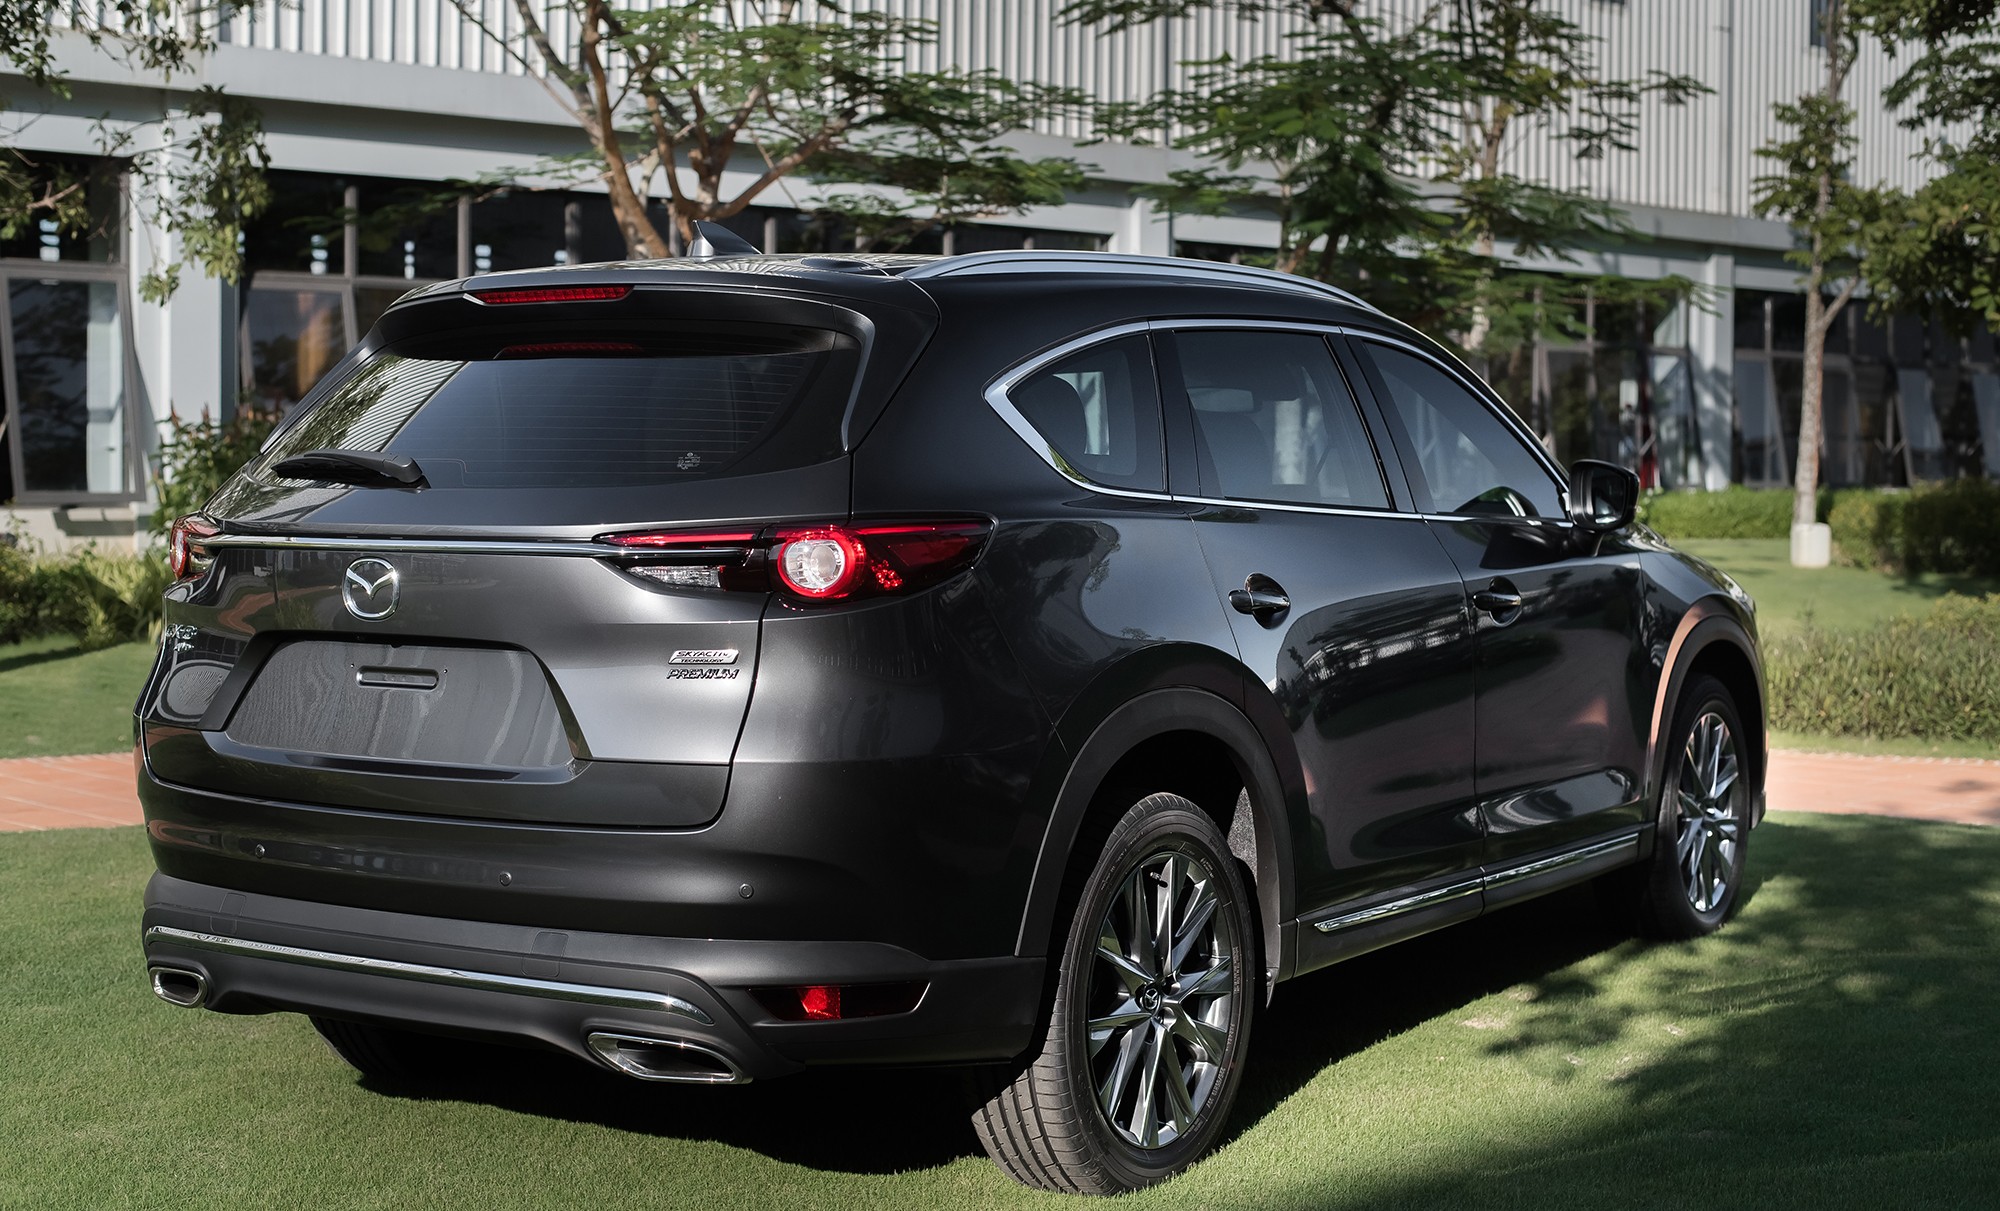 Mazda CX-8 mạnh tay giảm giá gần 100 triệu đồng, quyết soán ngôi Hyundai Santa Fe và Toyota Fortuner ảnh 2